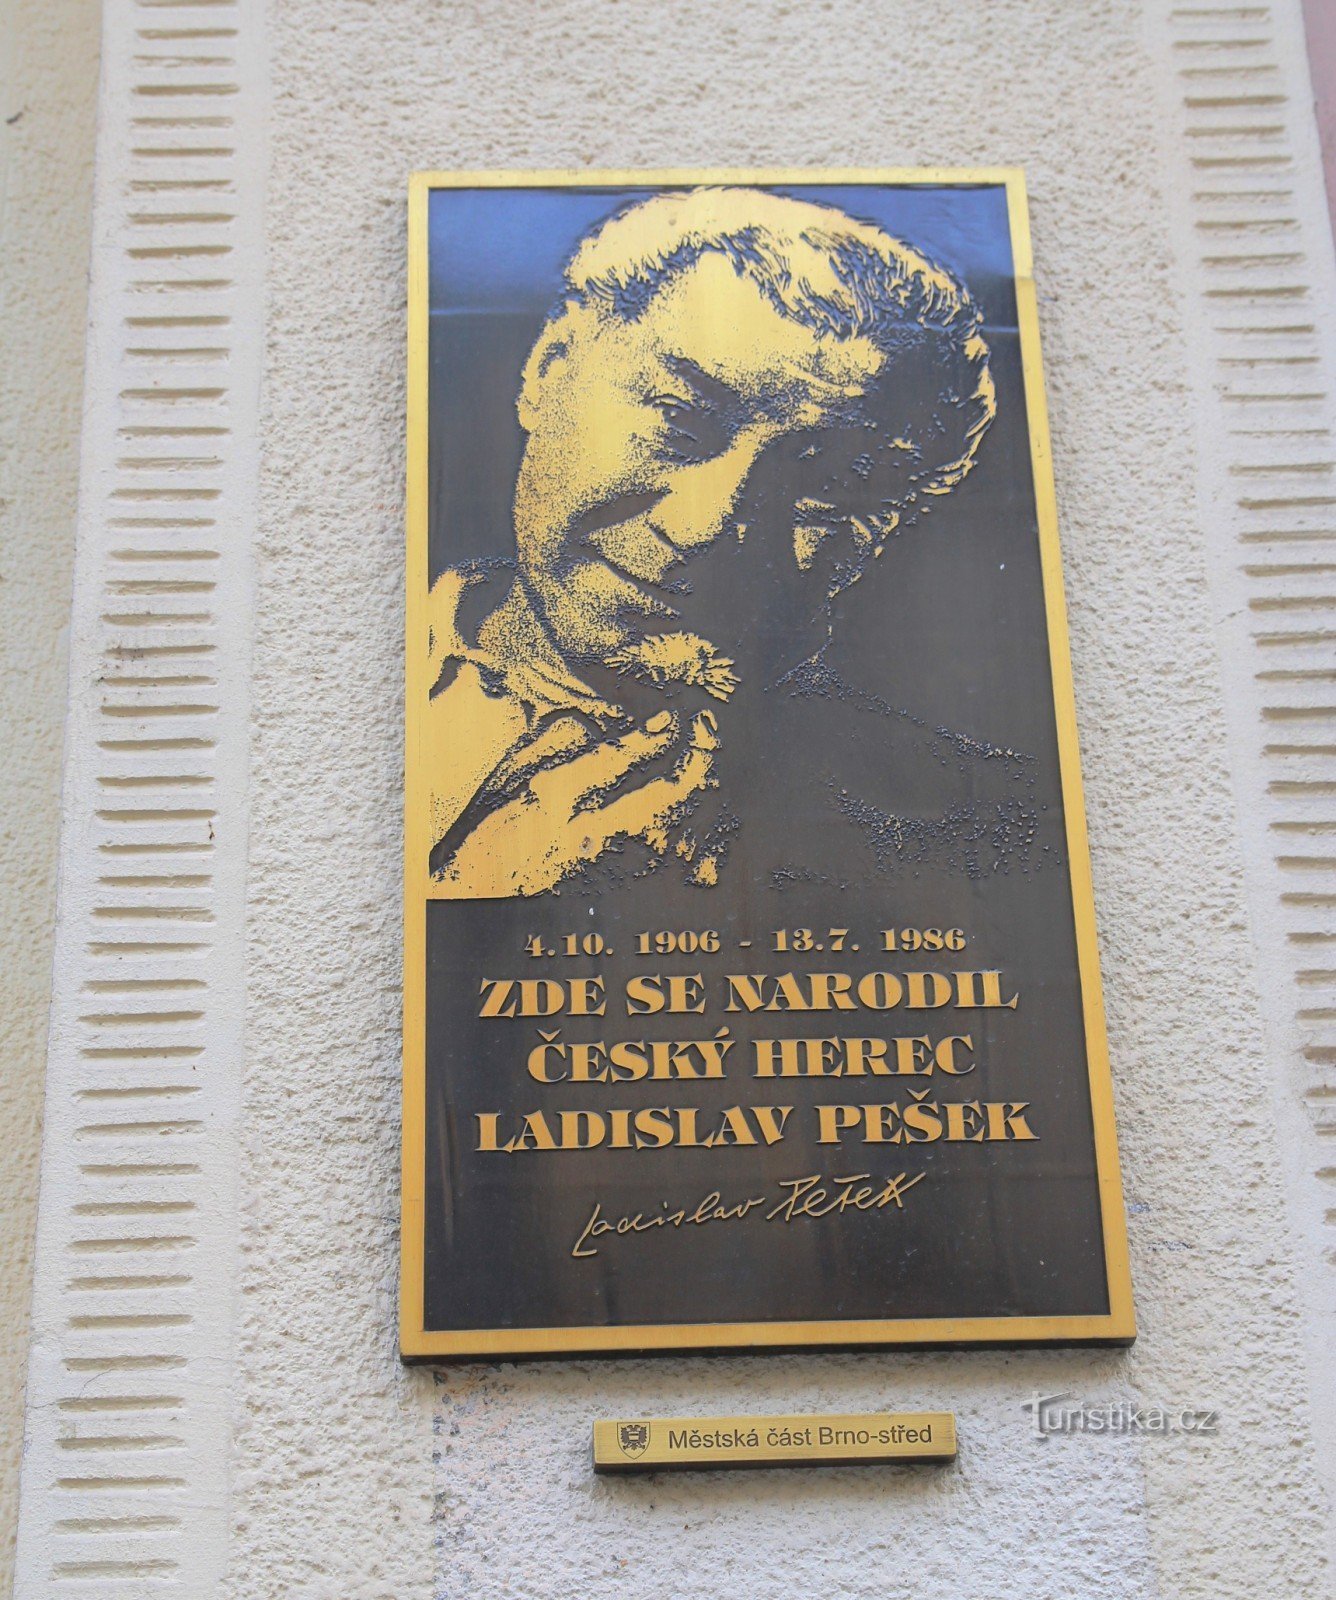 Tấm bảng tưởng niệm Ladislav Pešek